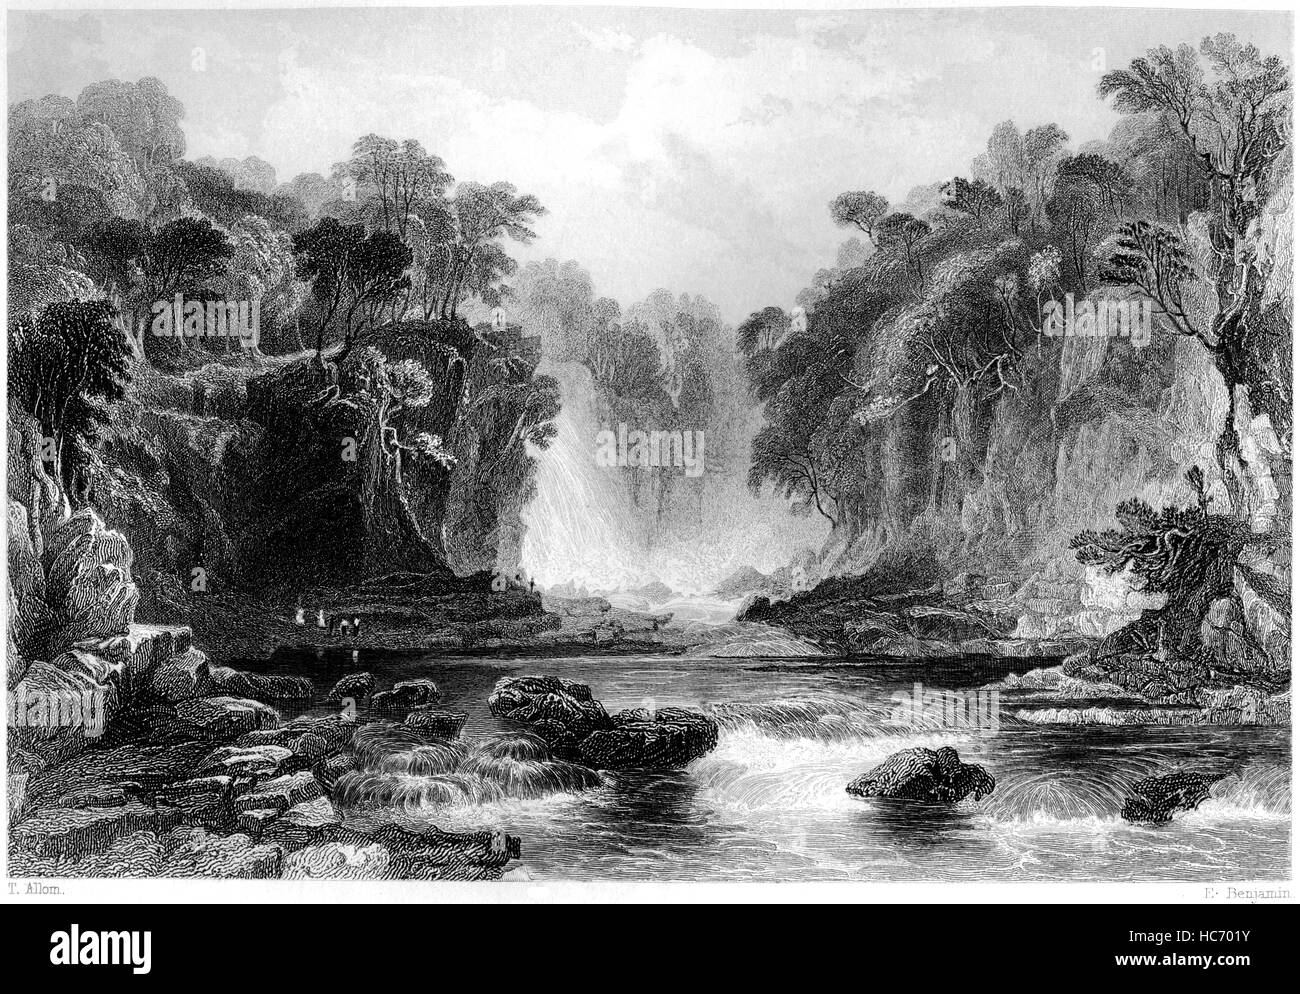 Une gravure d'Bonniton Lynn sur la rivière Clyde numérisées à haute résolution à partir d'un livre imprimé en 1859. Avis de droit d'auteur Banque D'Images